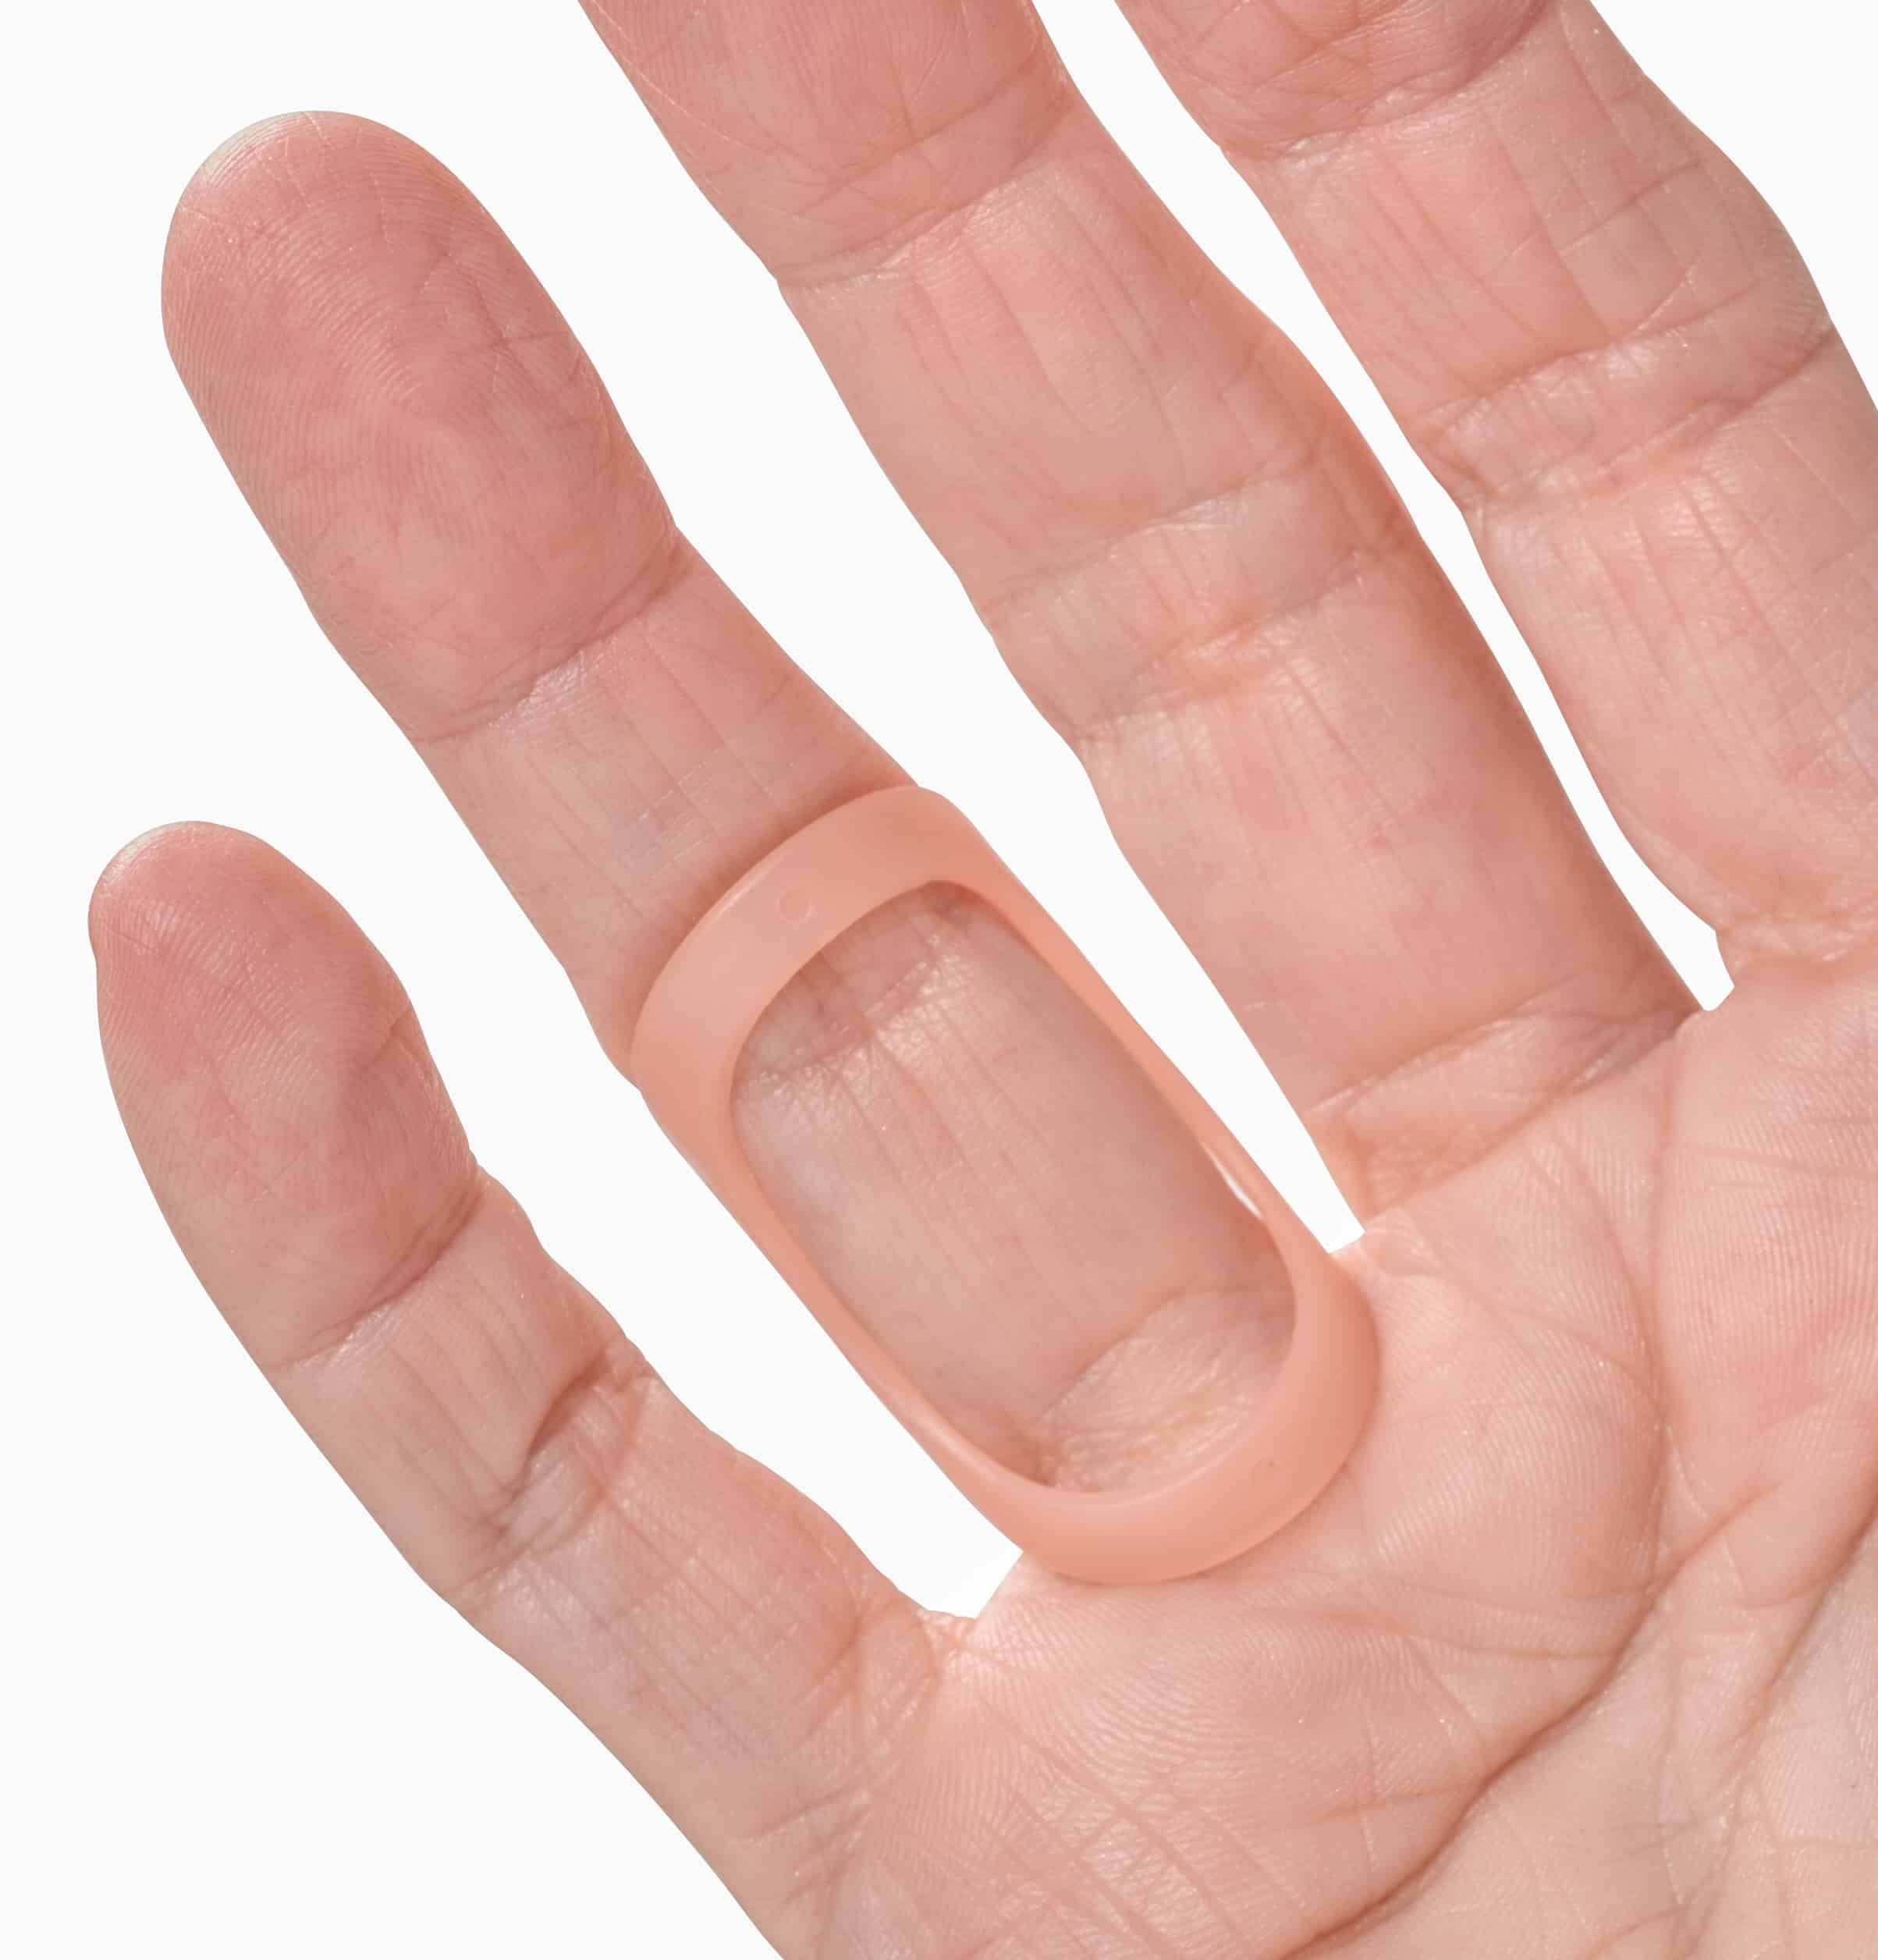 Oval-8 finger splint for trigger finger